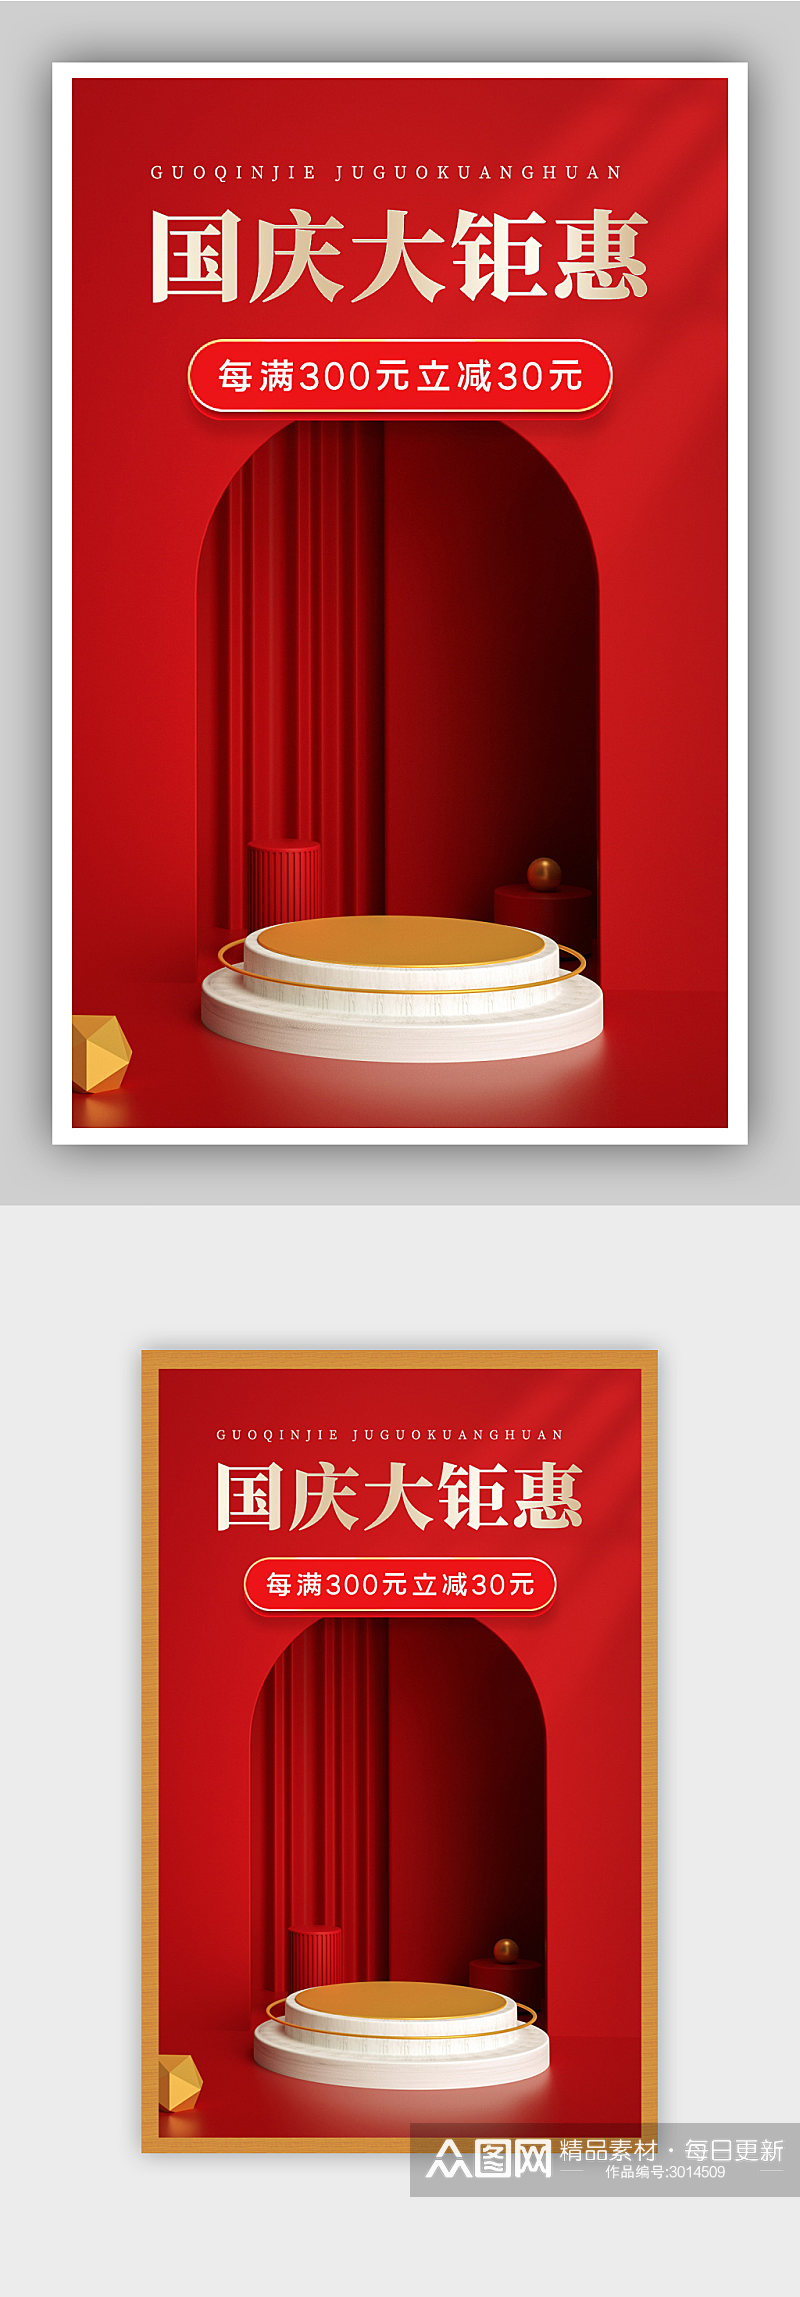 红色中国传统节日国庆节促销海报素材